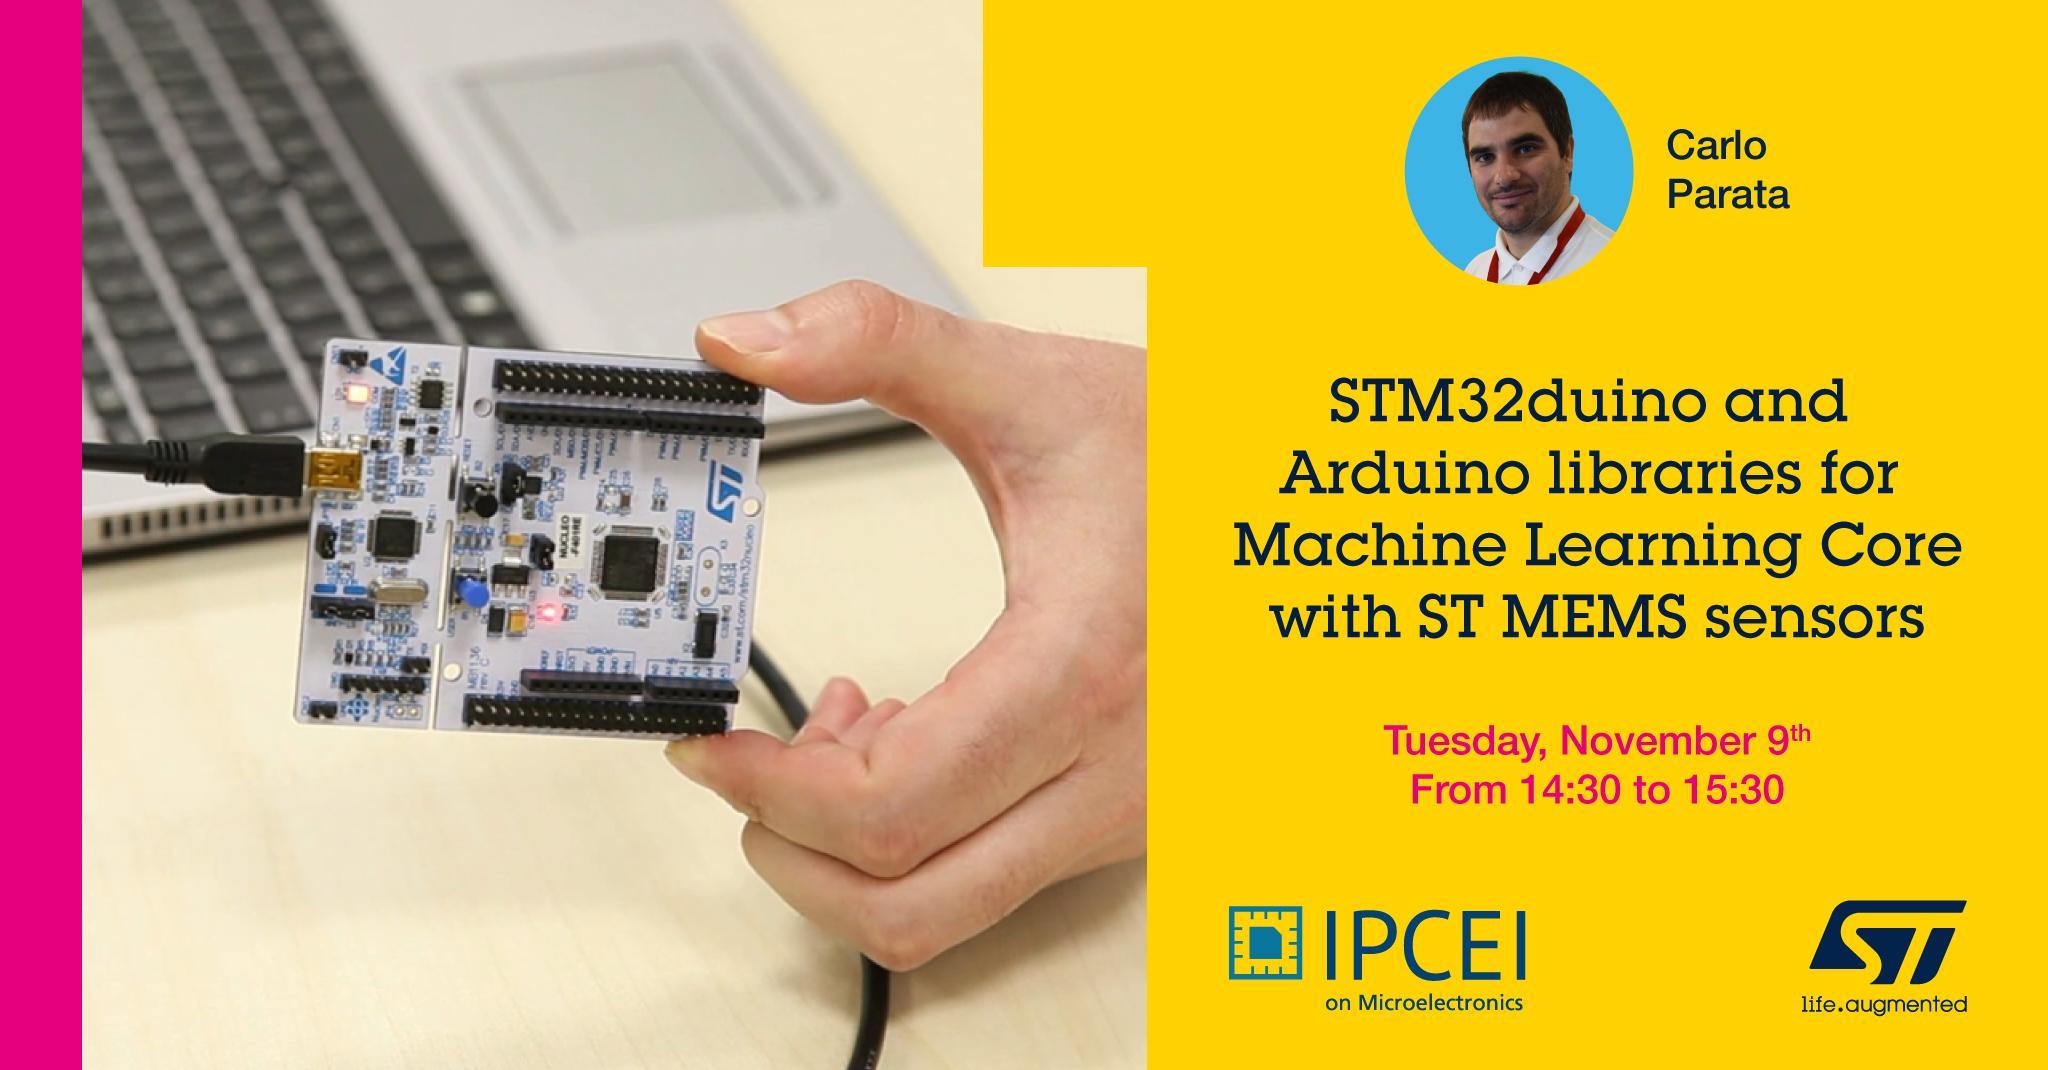 STM32duino and Arduino libraries for Machine Learning Core with ST MEMS sensors - La piattaforma STM32duino e le librerie Arduino per il Machine Learning Core con i sensori MEMS prodotti da ST